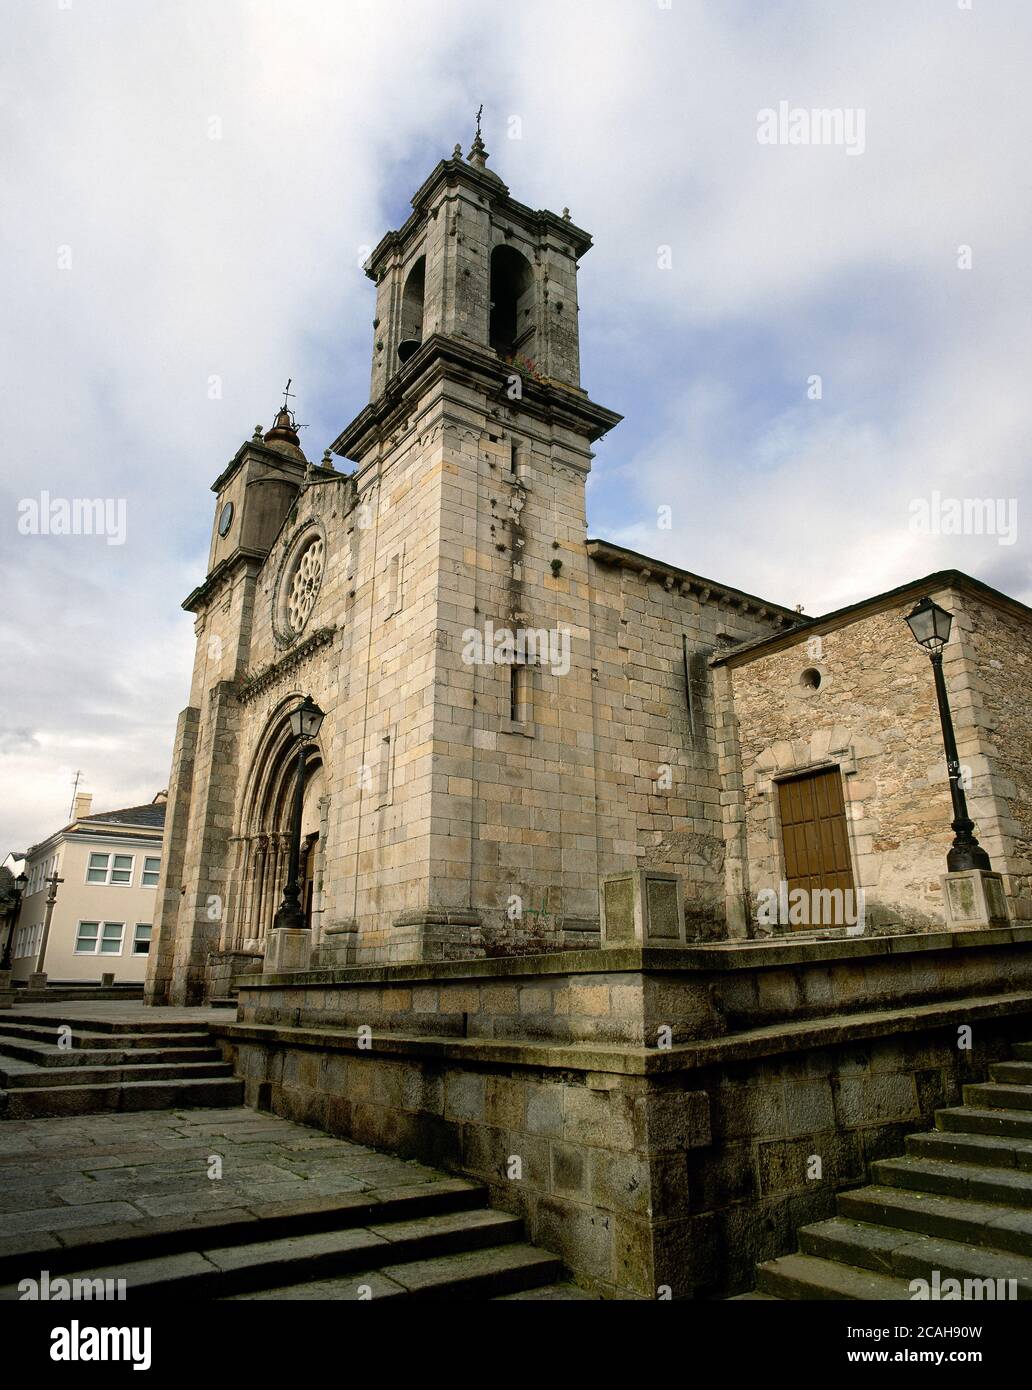 Spanien, Galicien, Provinz Lugo, Viveiro. Kirche Santa Maria del Campo (Unsere Liebe Frau von den Feldern). Es wurde in der zweiten Hälfte des 12. Jahrhunderts im romanischen Stil erbaut. Allgemeine Ansicht. Stockfoto